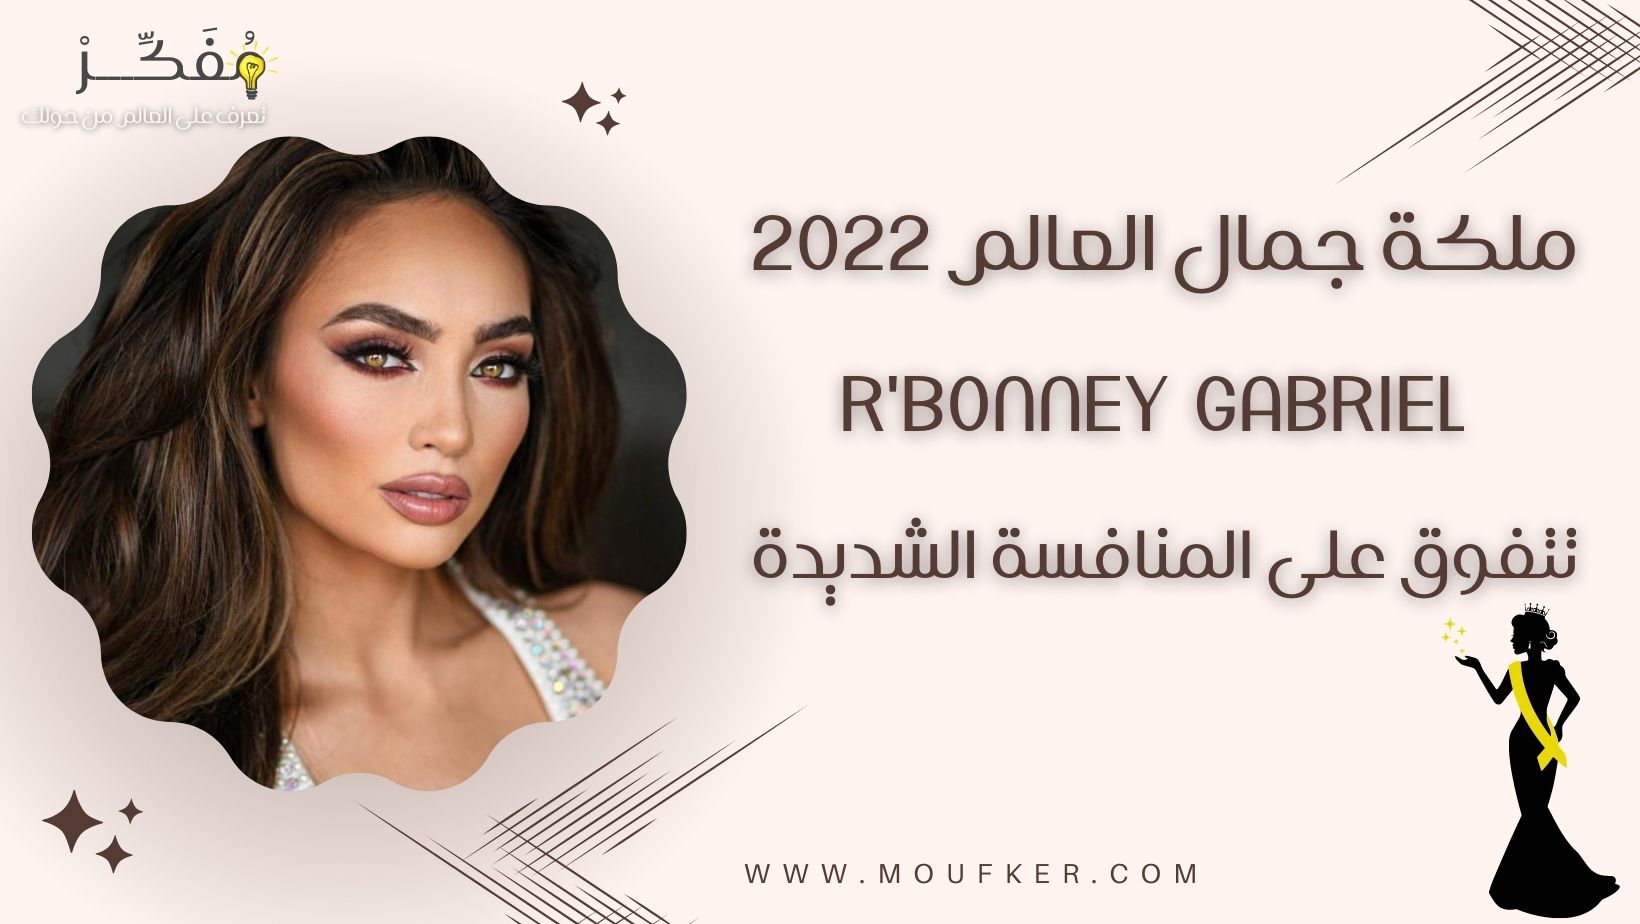 ملكة جمال العالم 2022 .. R’Bonney Gabriel ..  تتفوق على المنافسة الشديدة